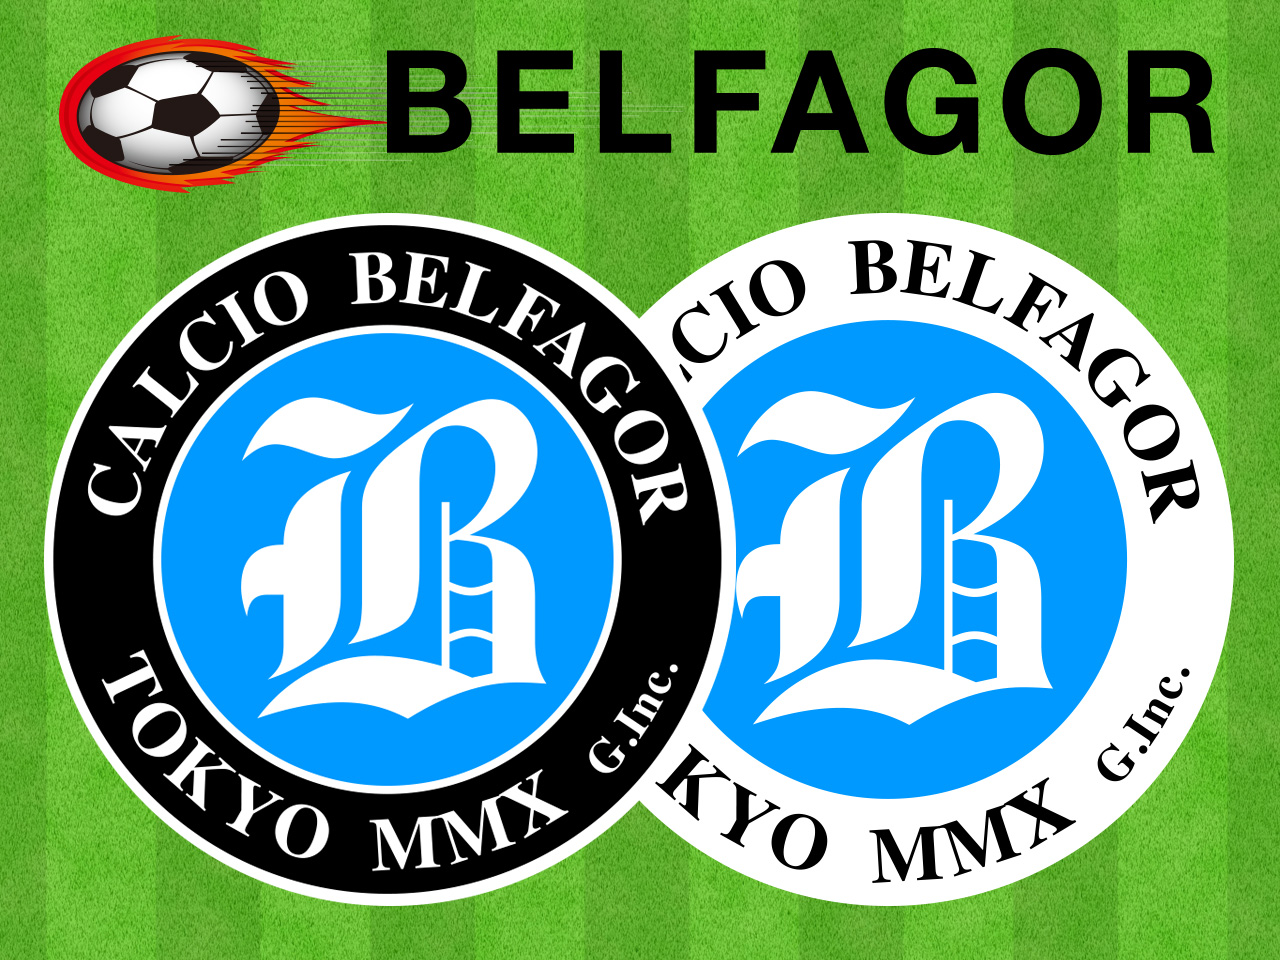 BELFAGOR T-shirt logo